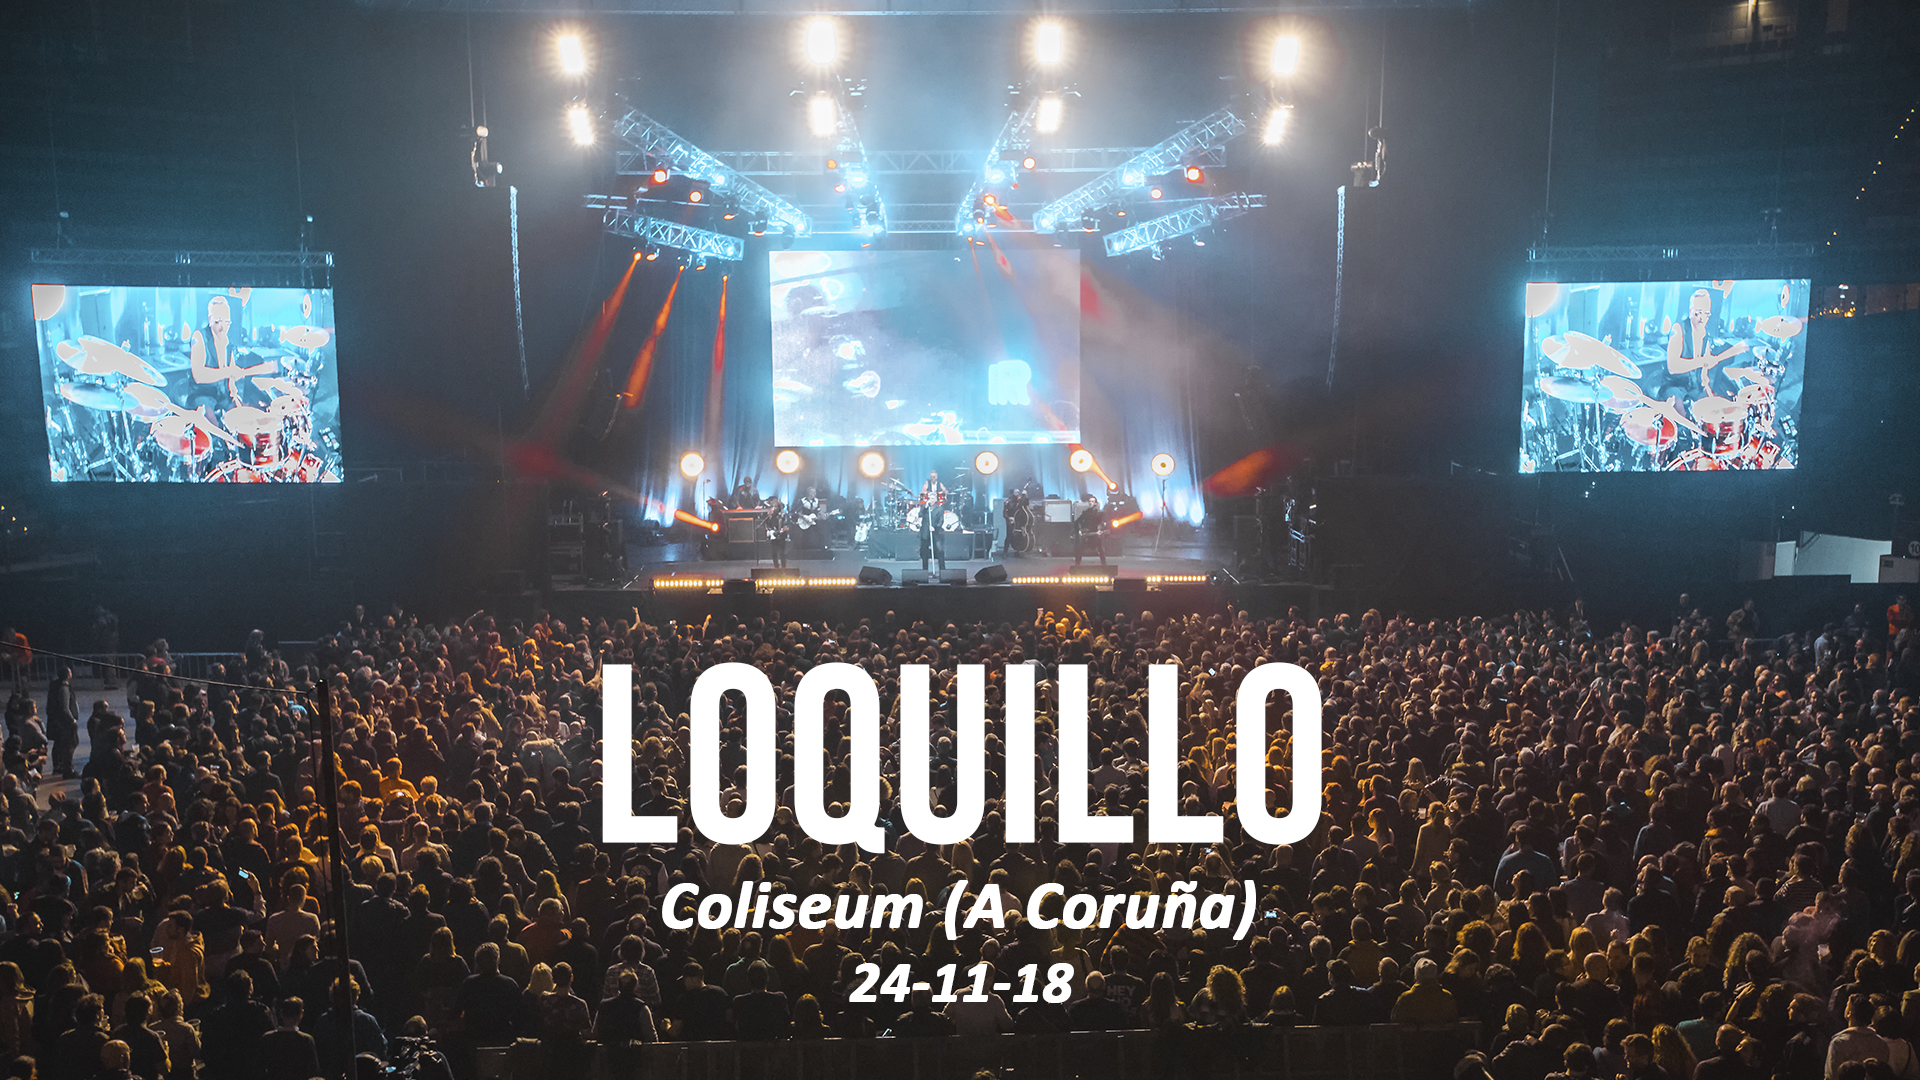 Loquillo gira 40 aniversario Igor paskual Coliseum A Coruña